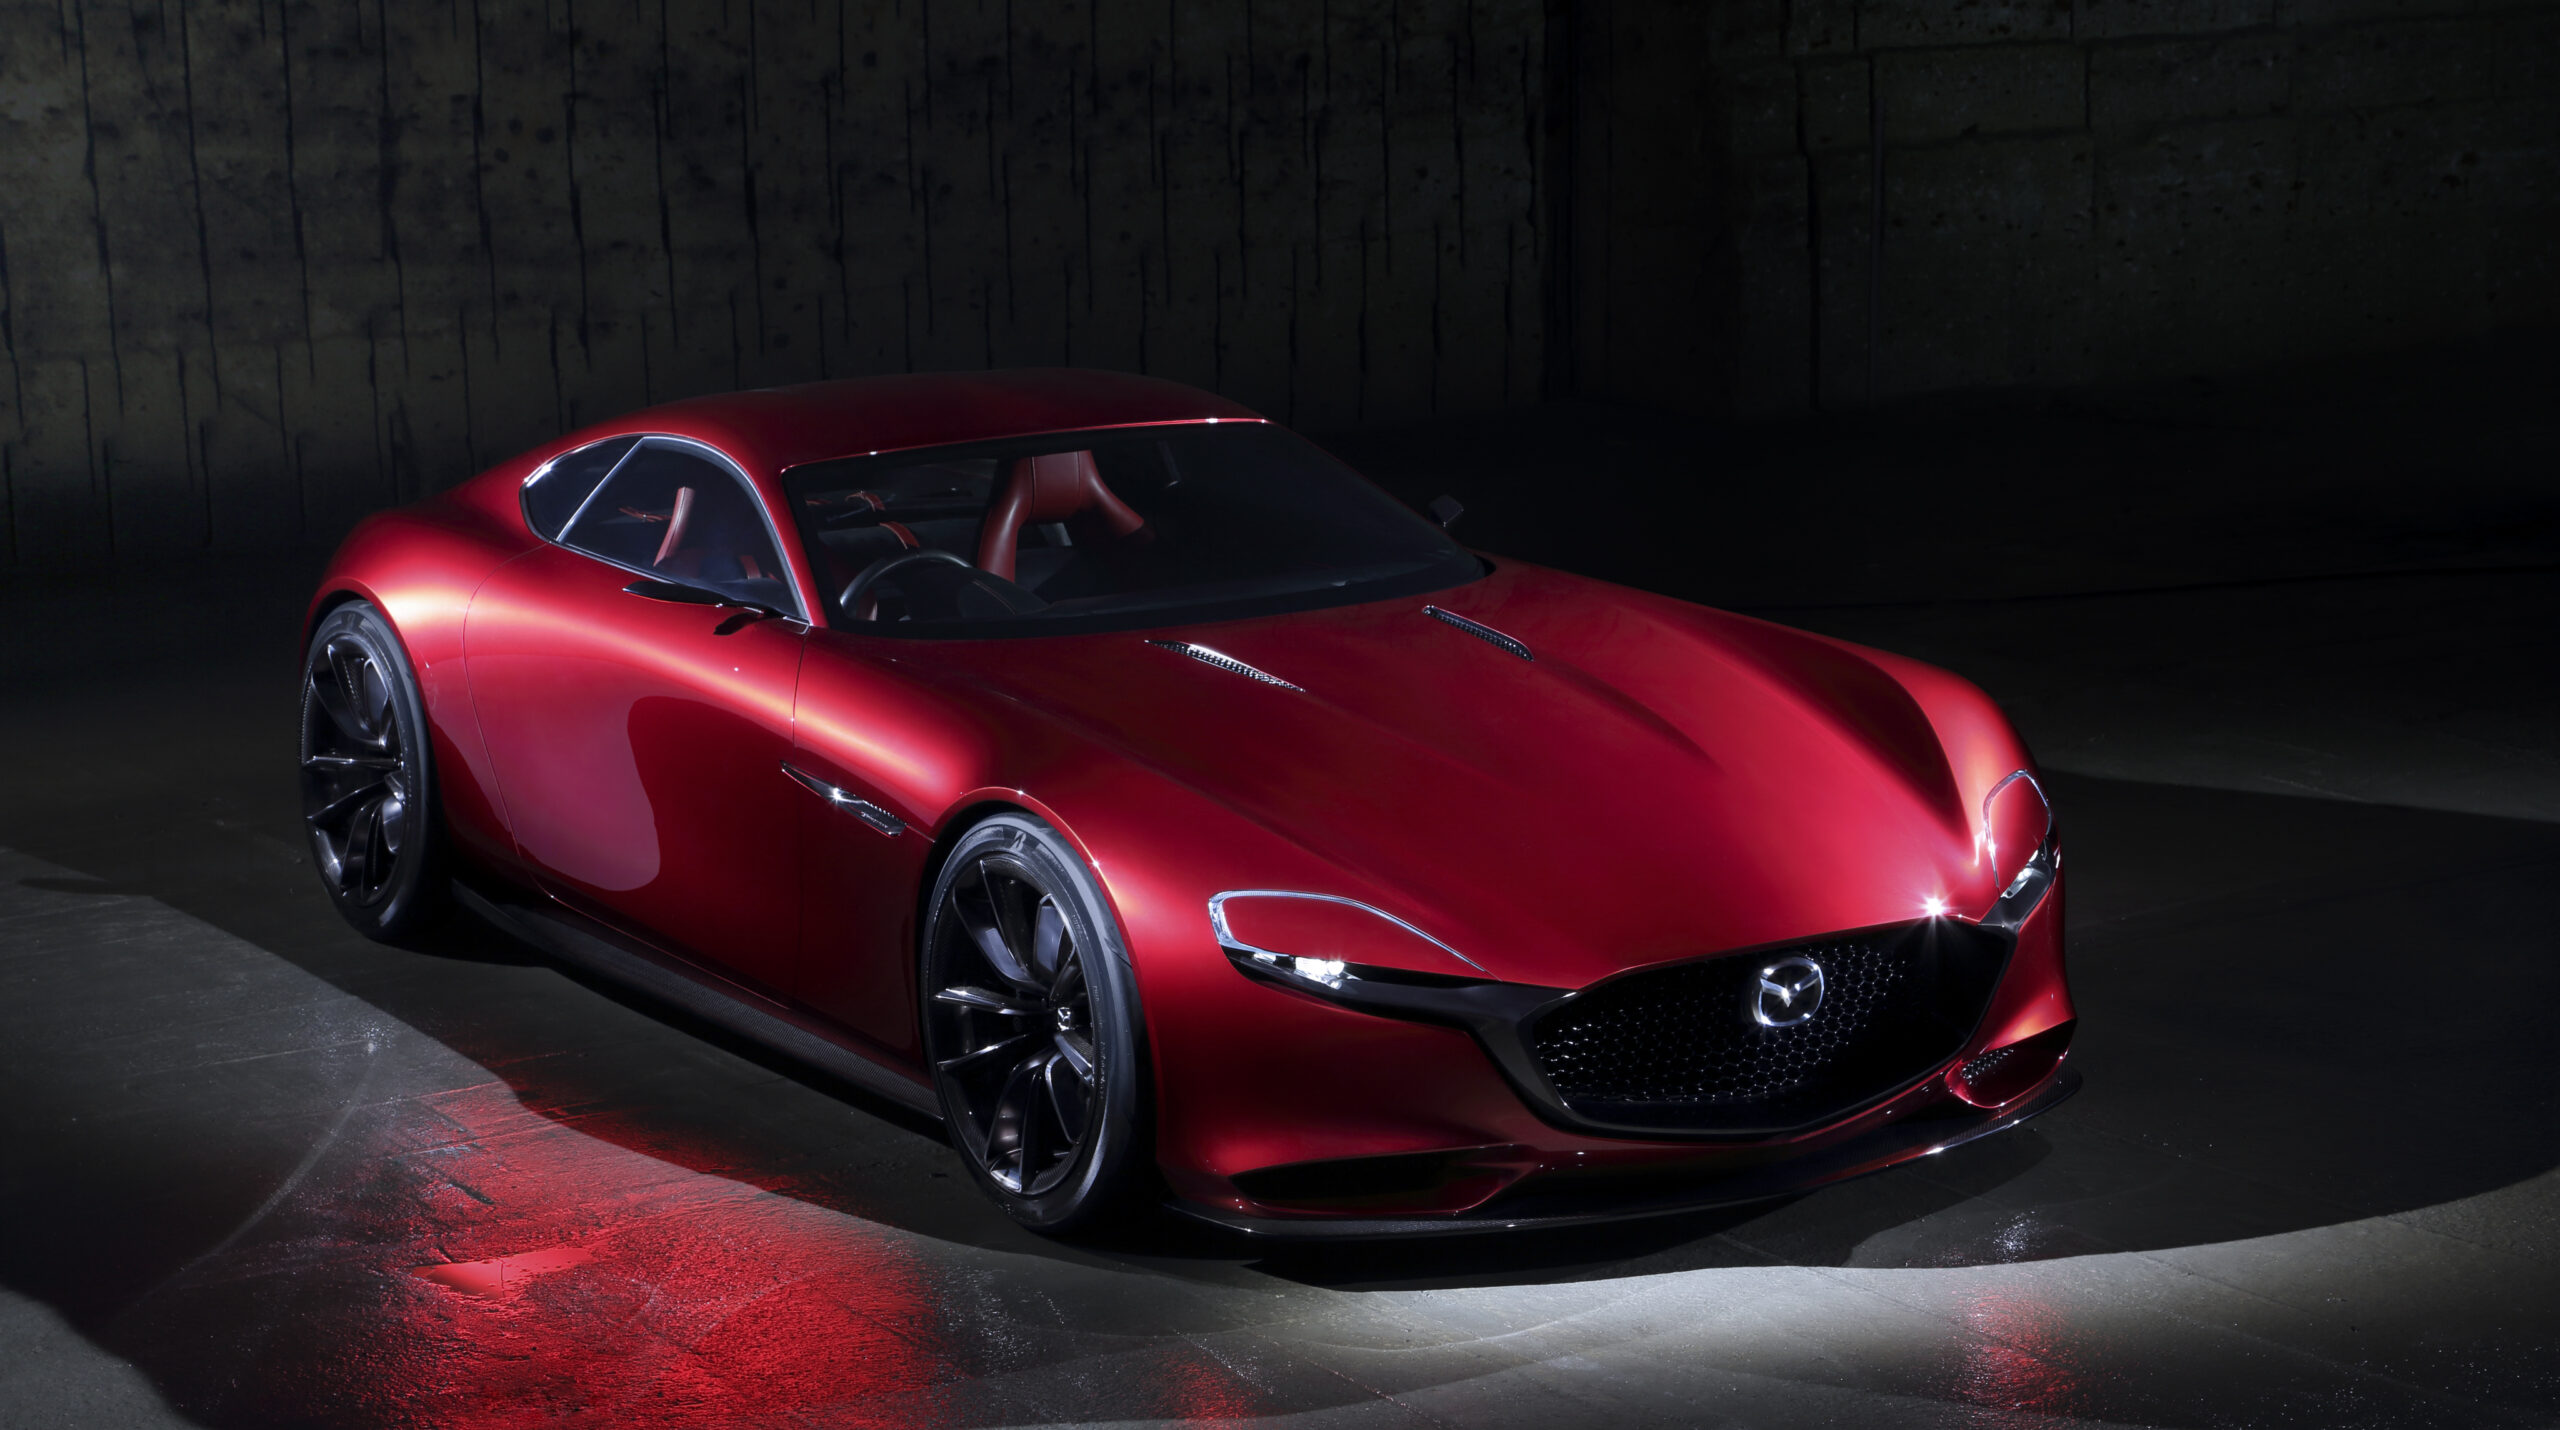 KOMENTÁŘ: Rozloučí se Mazda stylově se spalovací érou?